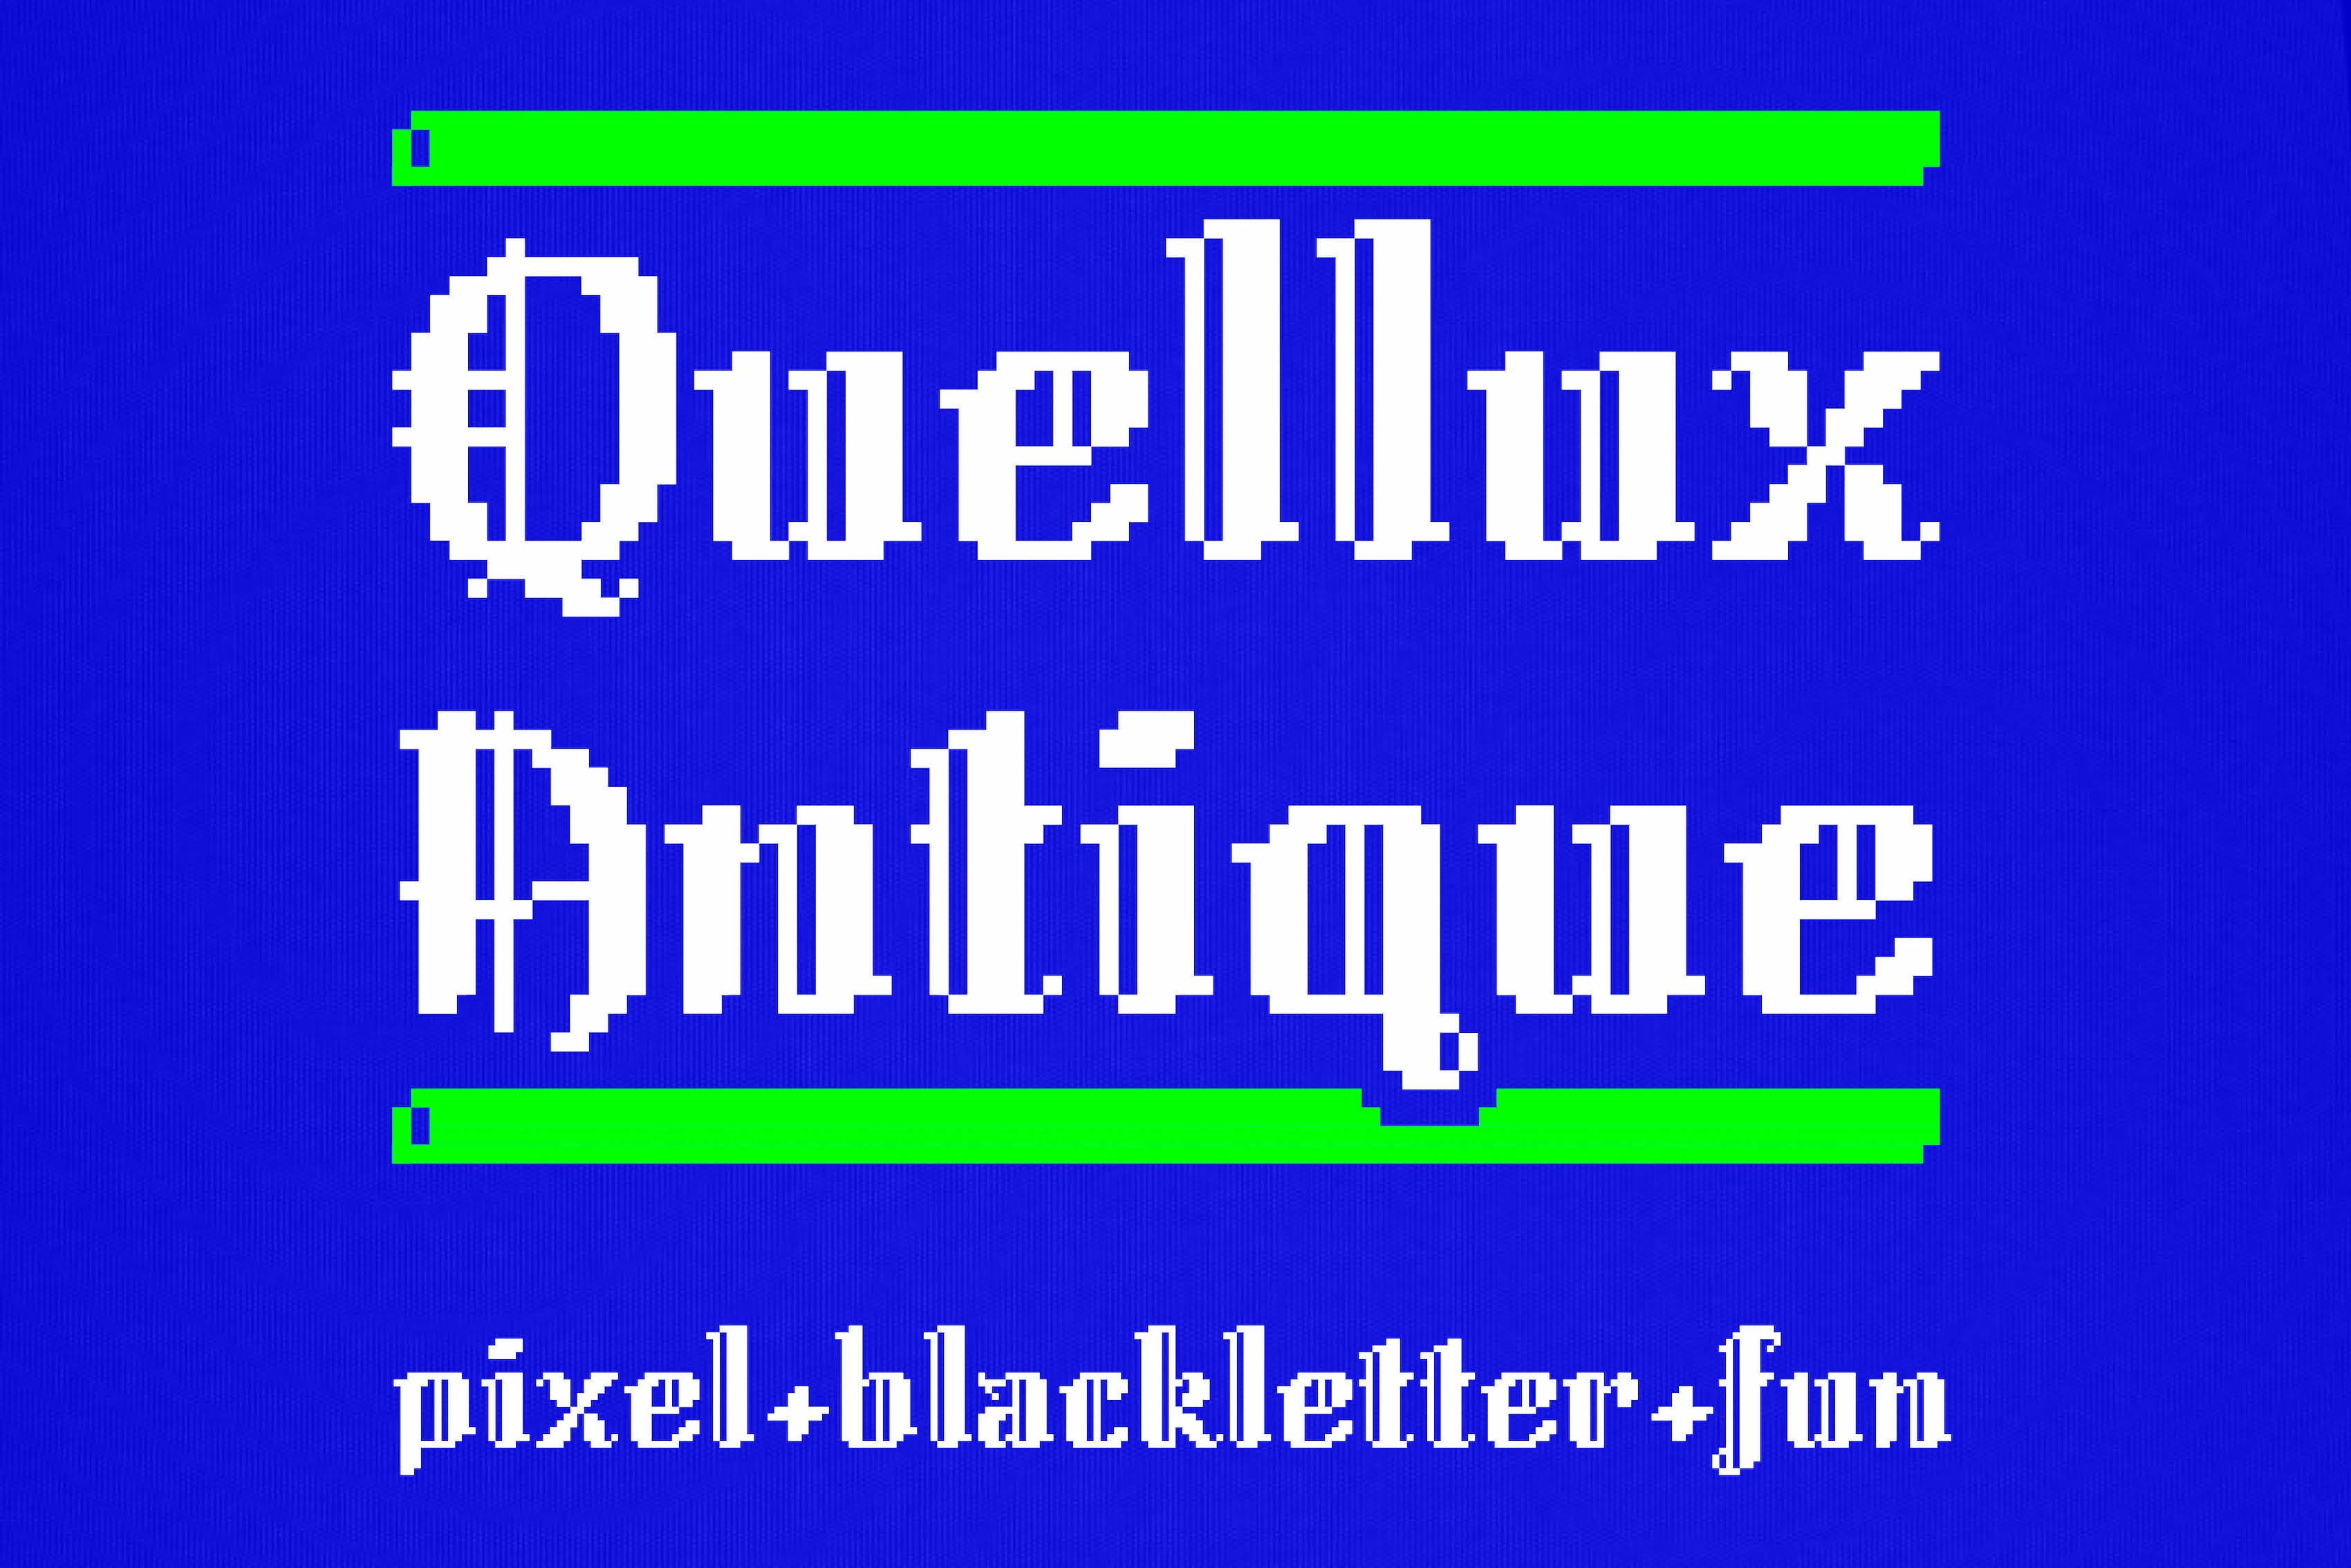 Quellux Antique - Pixel Blackletter cover image.